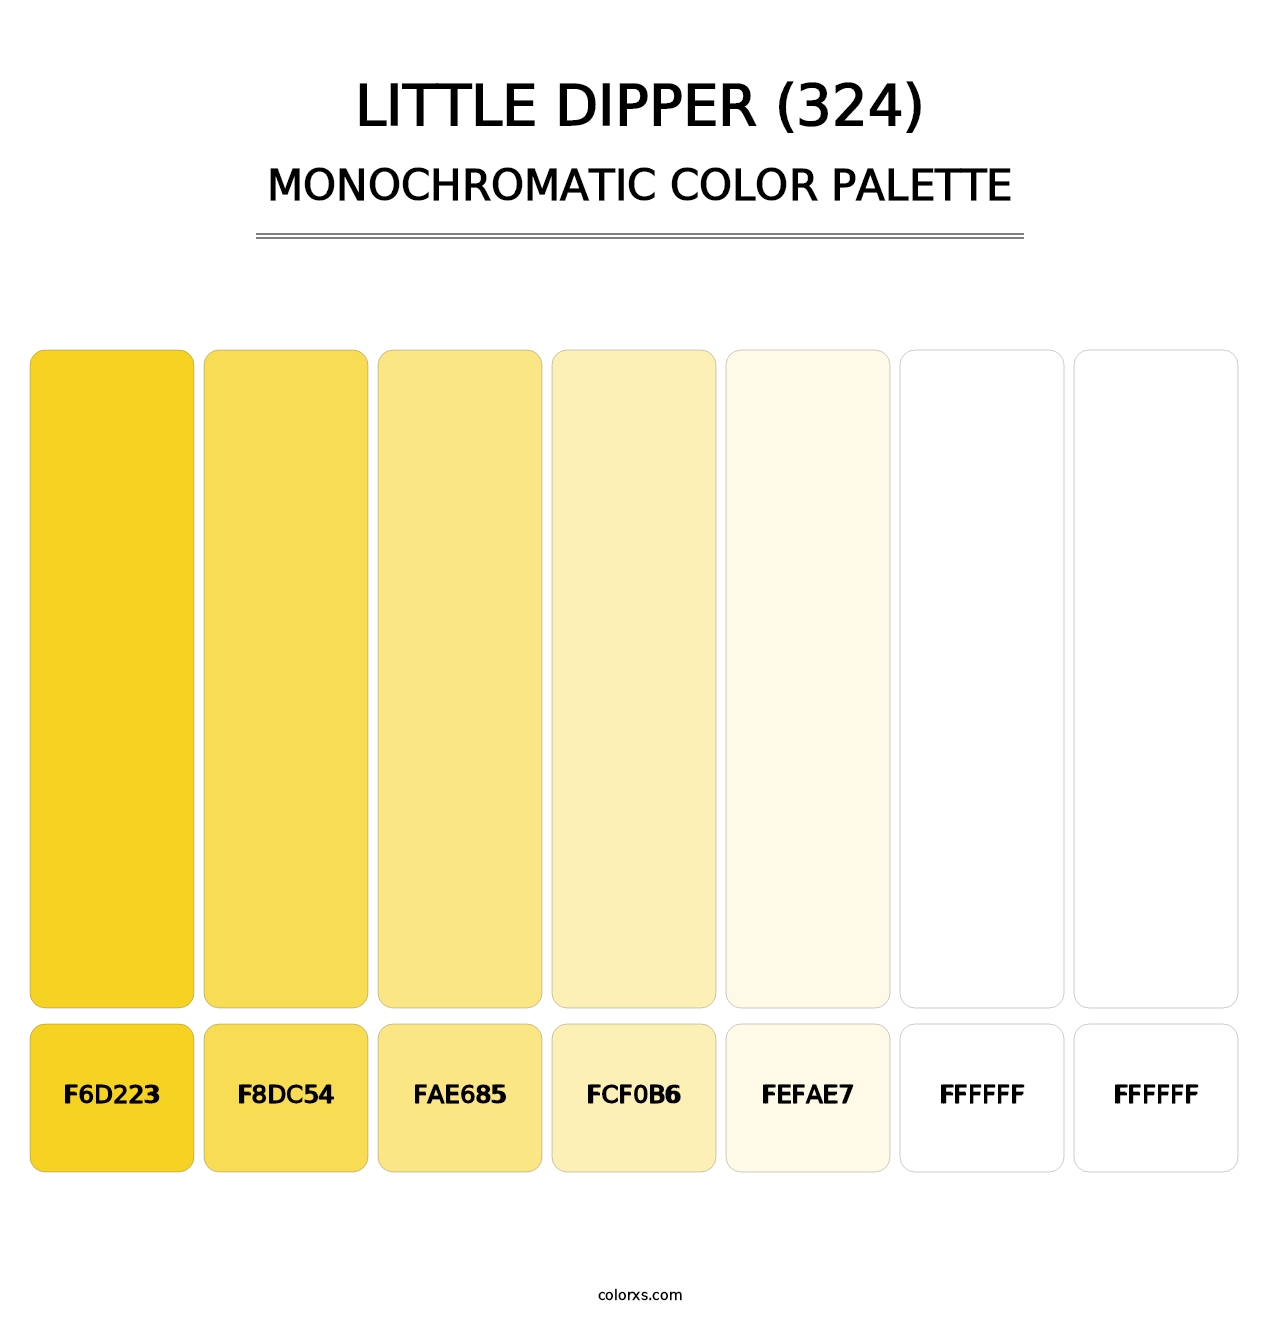 Little Dipper (324) - Monochromatic Color Palette